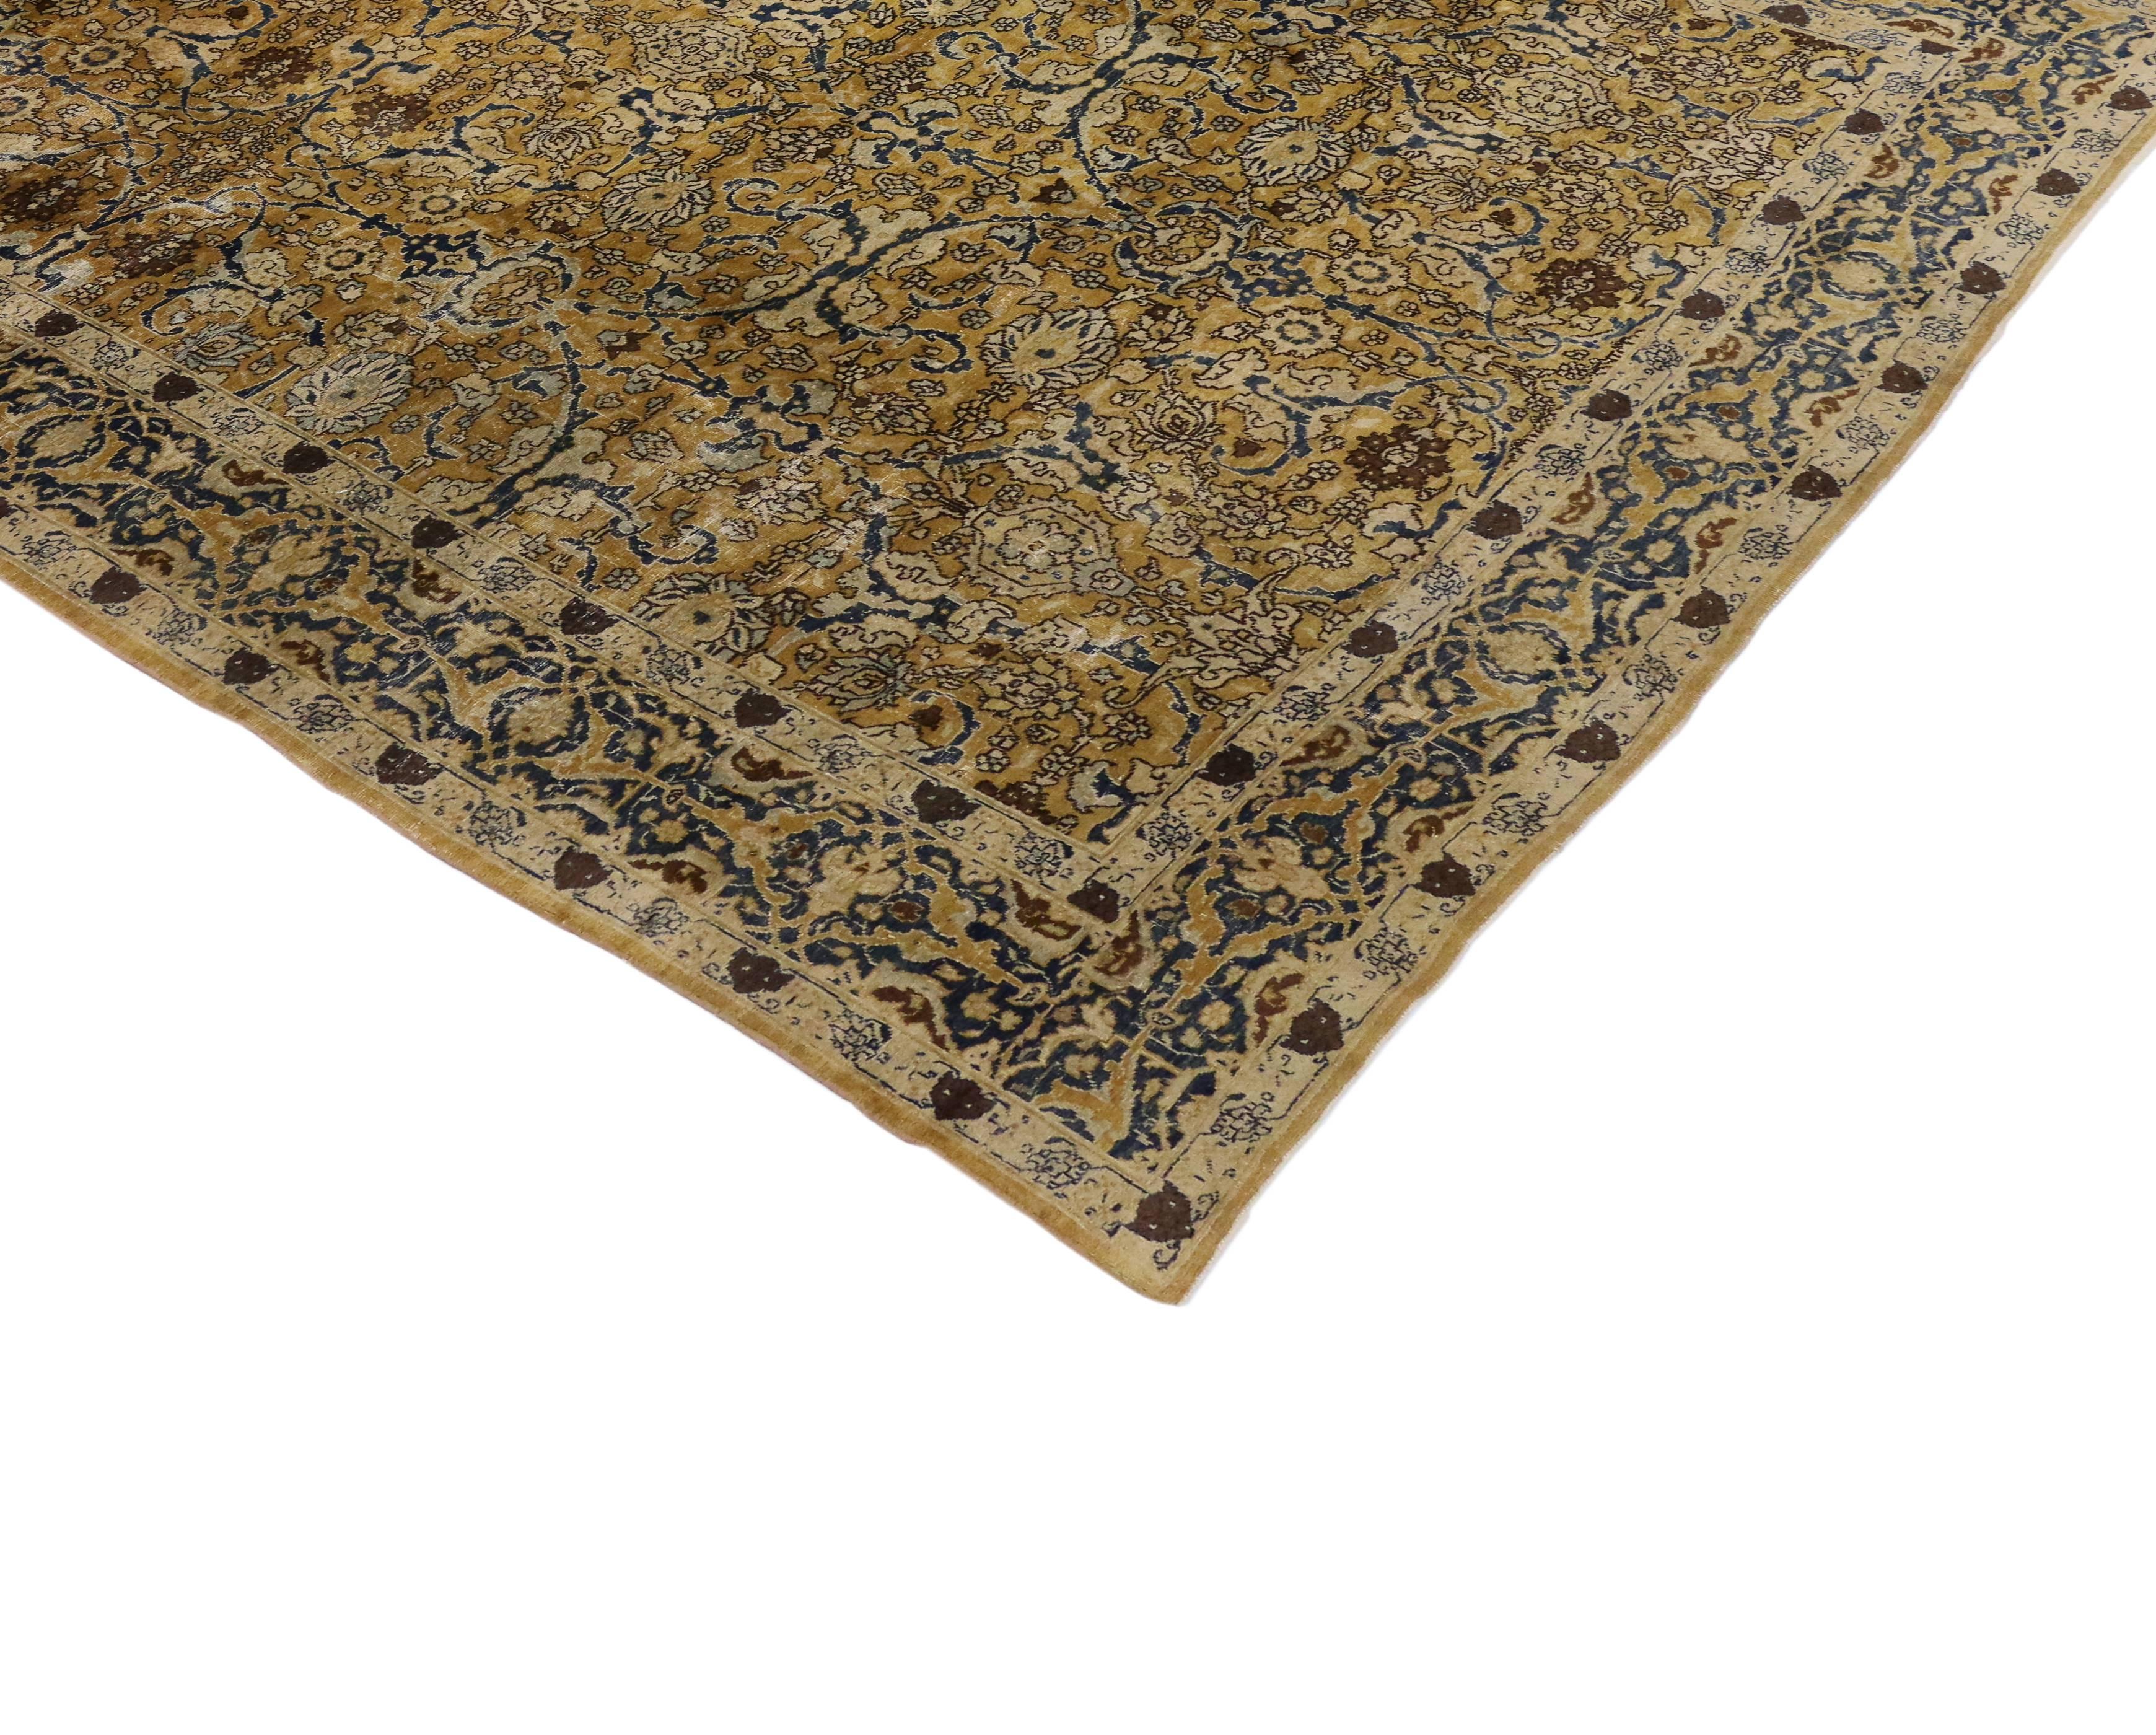 Saturé d'une extraordinaire palette d'or et de bleus, ce tapis persan Kirman ancien présente un exquis motif sur toute sa surface. Les vignes arabesques serpentent à travers un pot-pourri de fleurs exquisément composées, créant une cadence